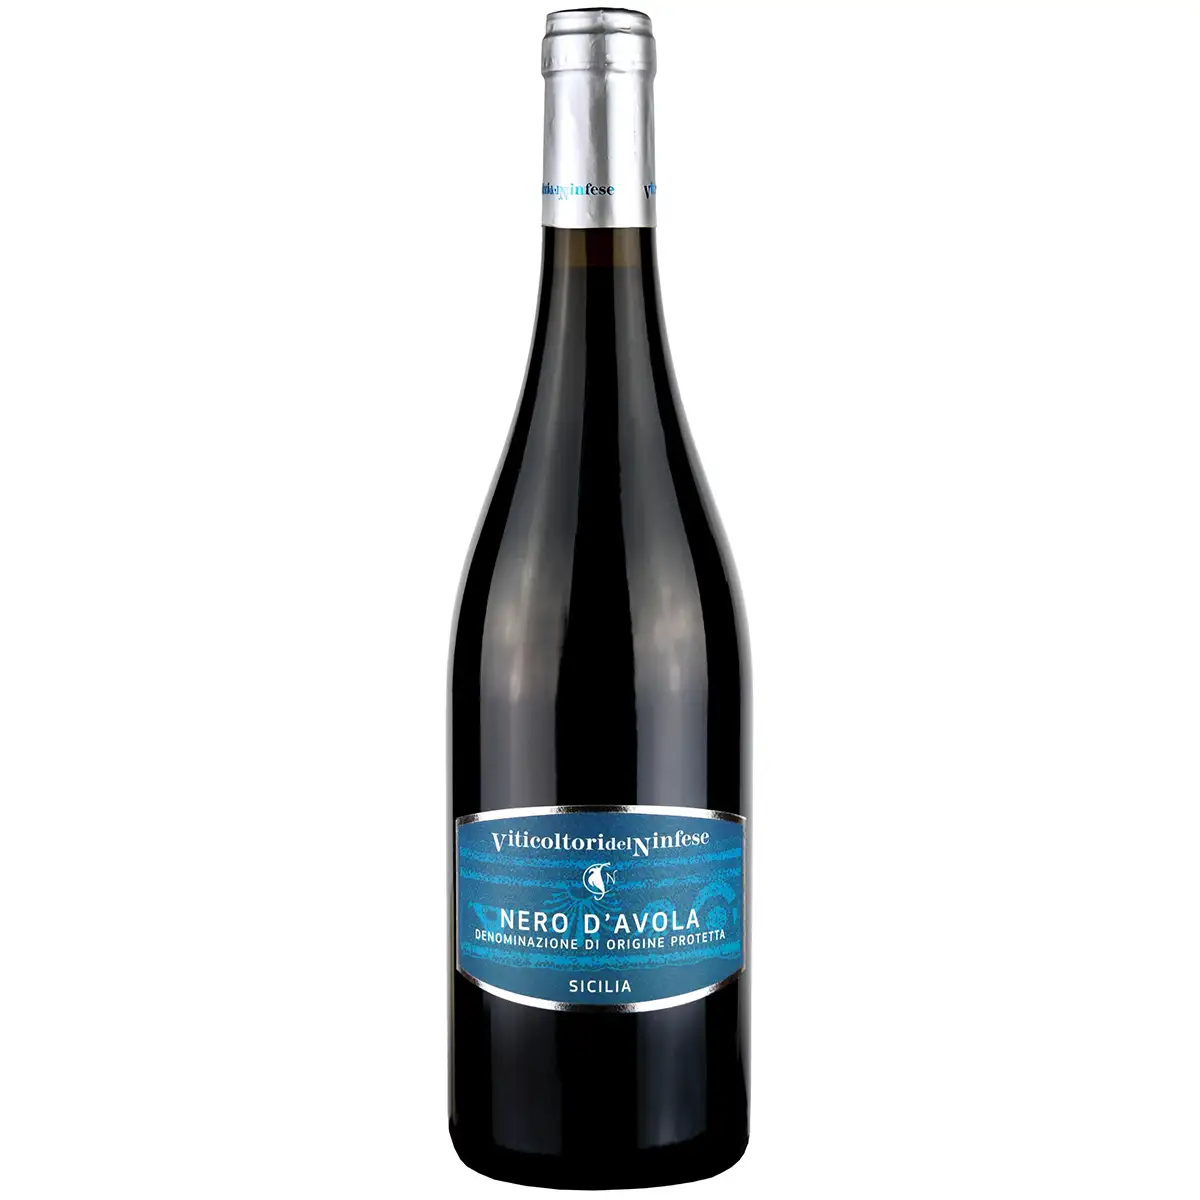 NERO D'AVOLA ไวน์แดงคุณภาพสูง,ไวน์แดงจากอิตาลีที่มีชื่อเสียงเก็บเกี่ยวรสชาติได้เต็มที่พร้อมส่ง